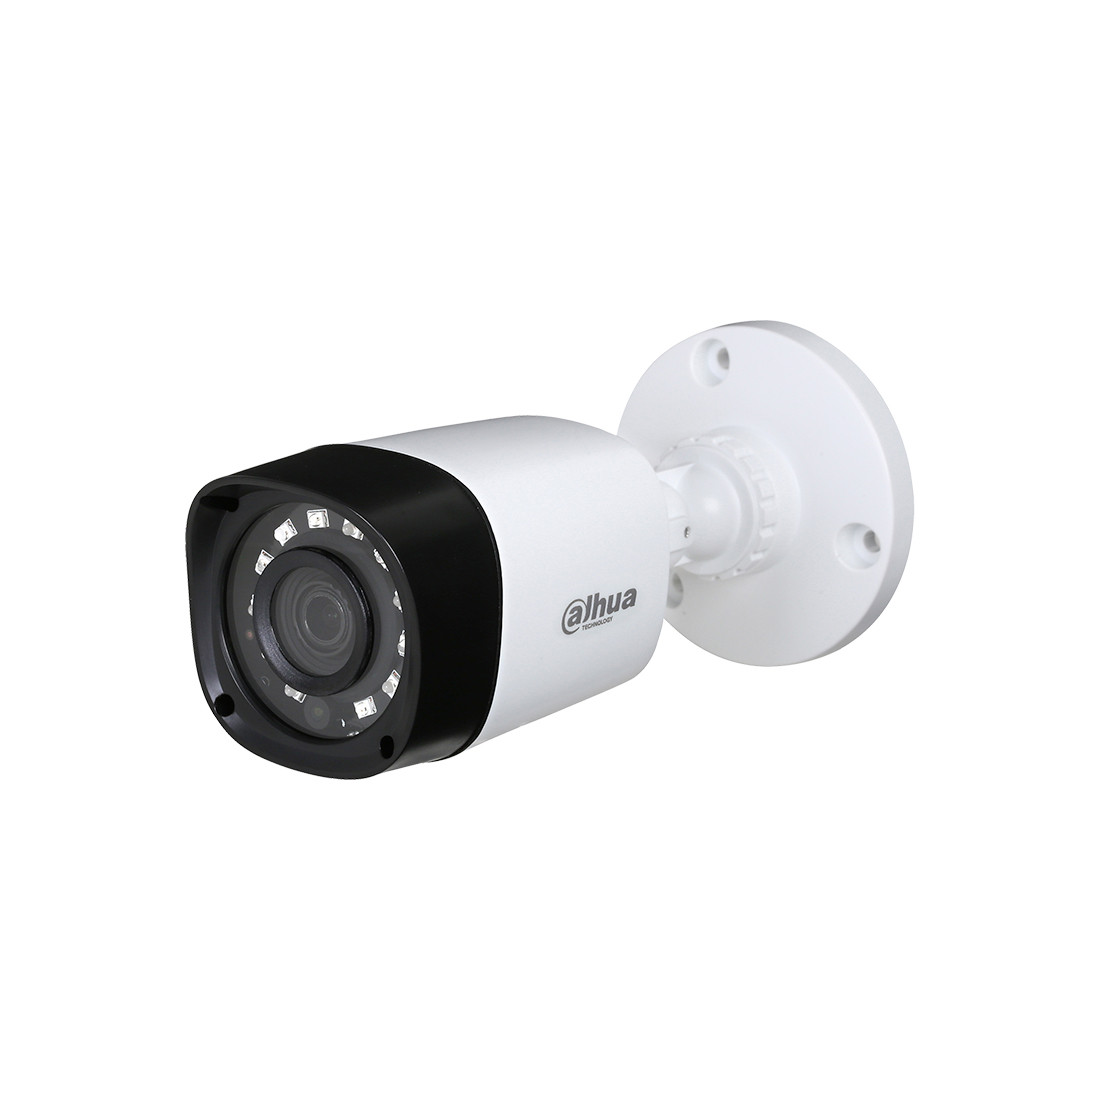 Dahua DH-HAC-HFW1000RP-0360B-S3 видеокамера цилиндрическая аналоговая, 1.0 МП, ИК-подсветка - до 20 м